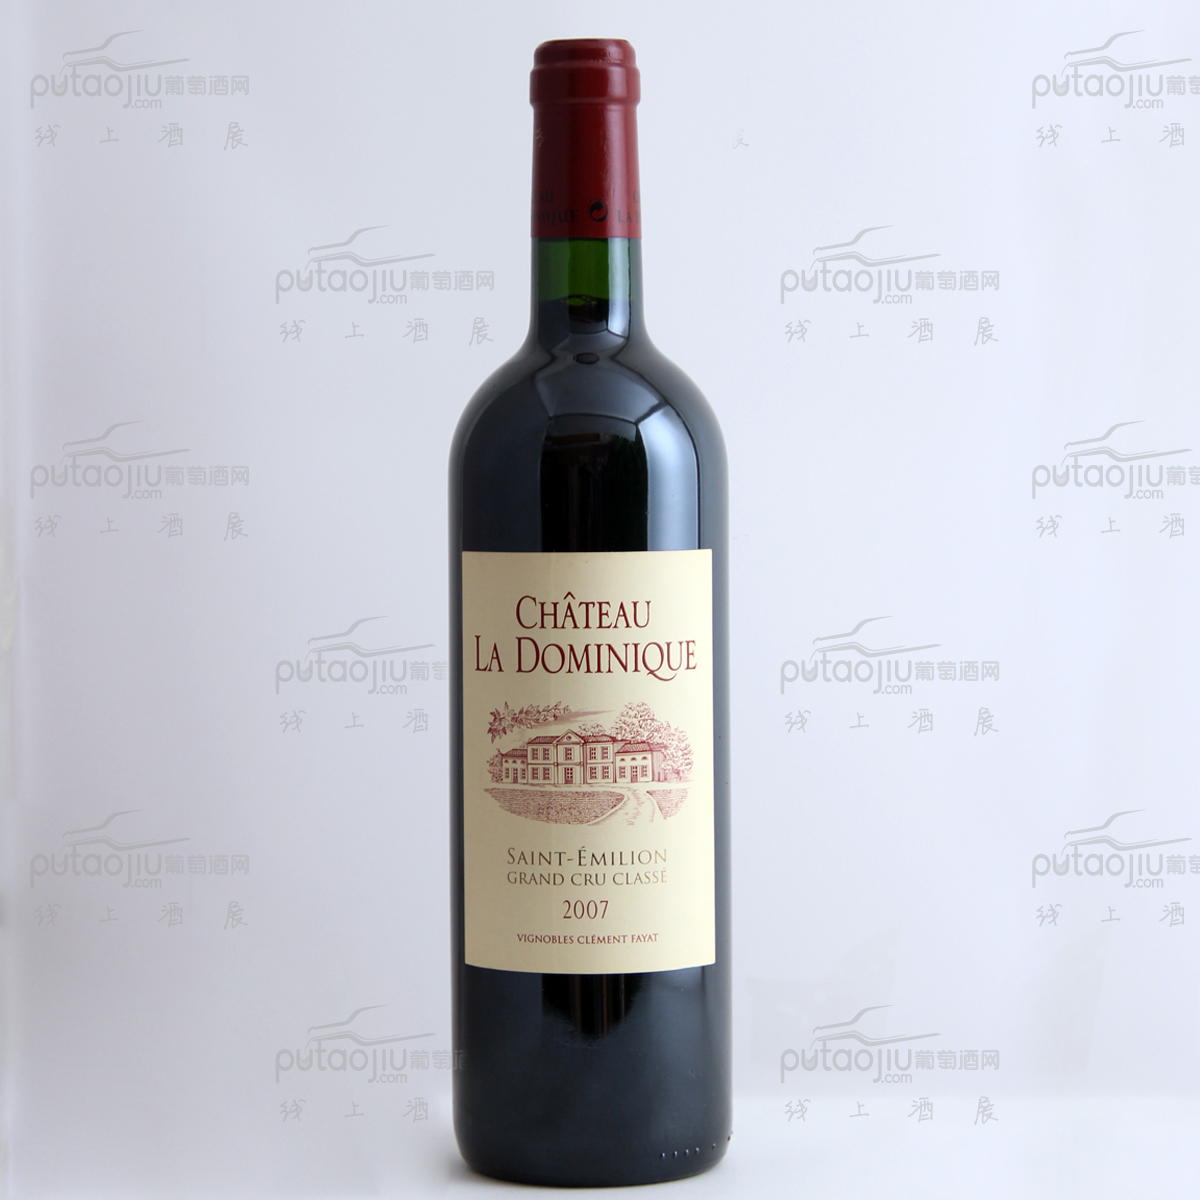 法国圣埃美隆多米尼克城堡混酿AOC法定产区干红葡萄酒